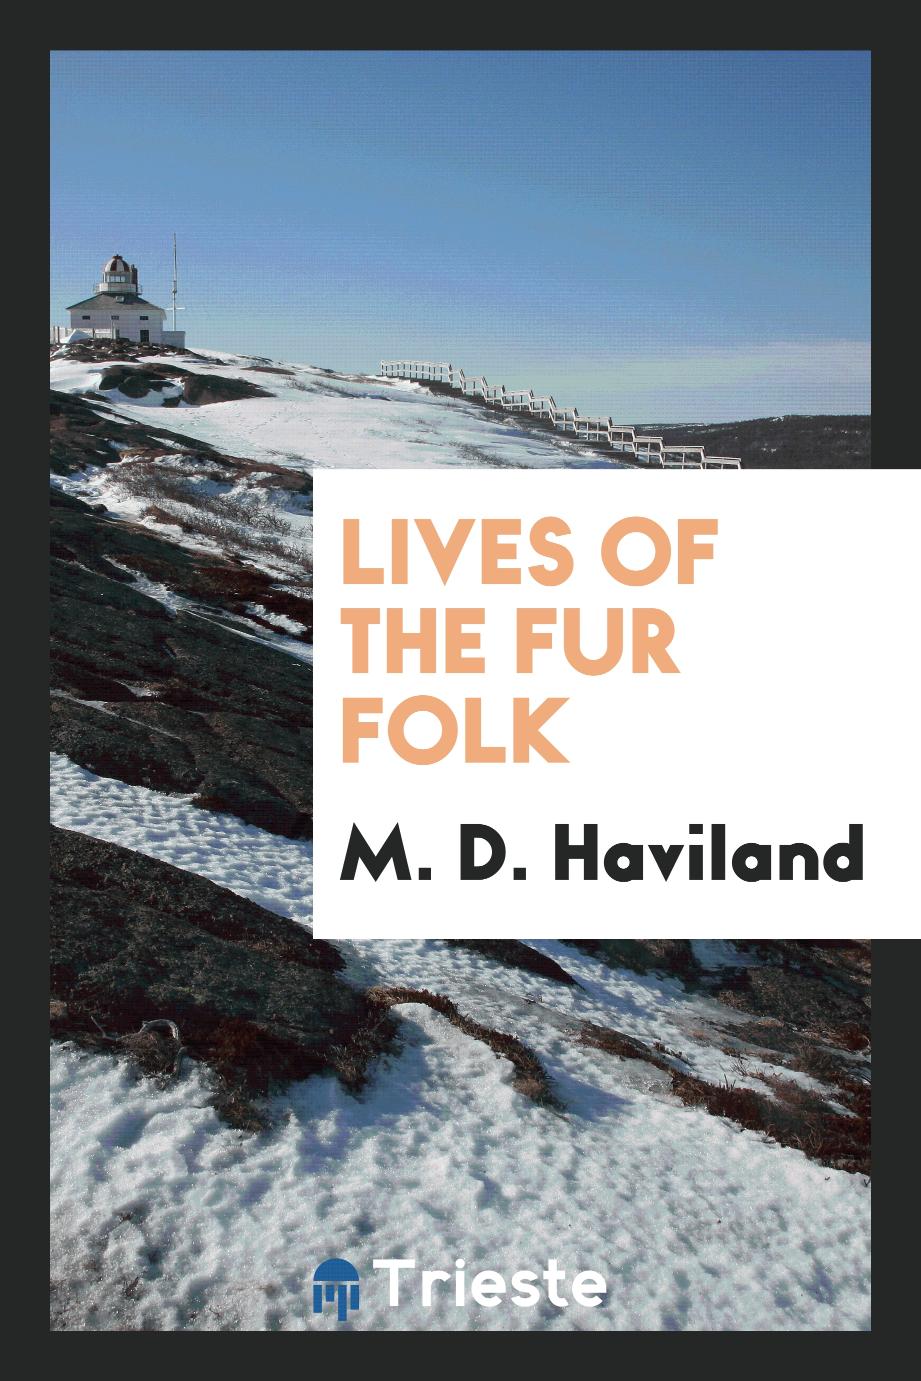 Lives of the fur folk